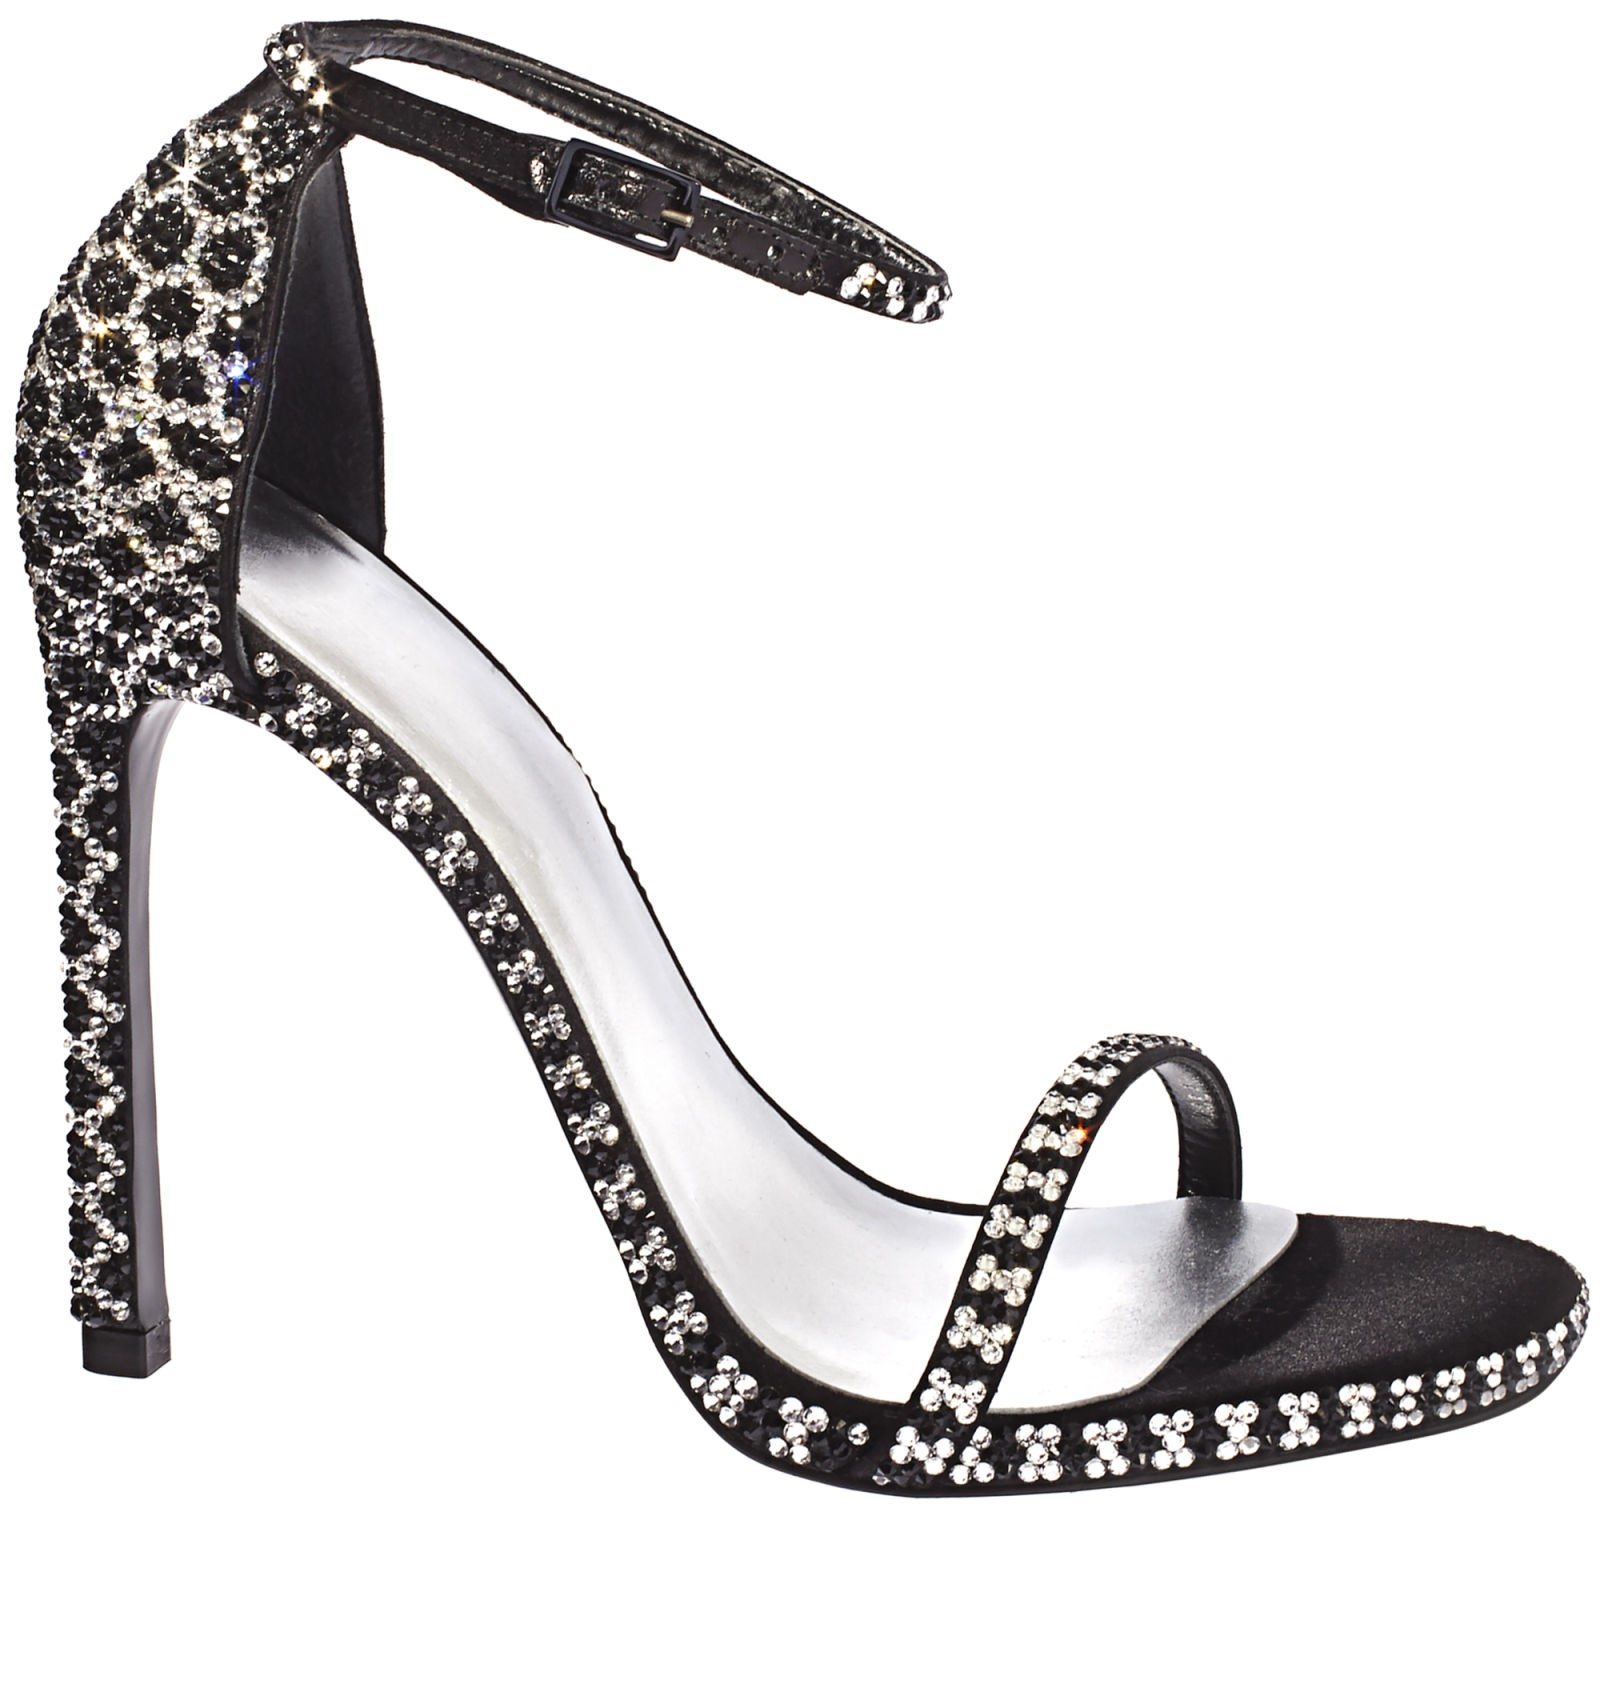 Extravagant shoes: